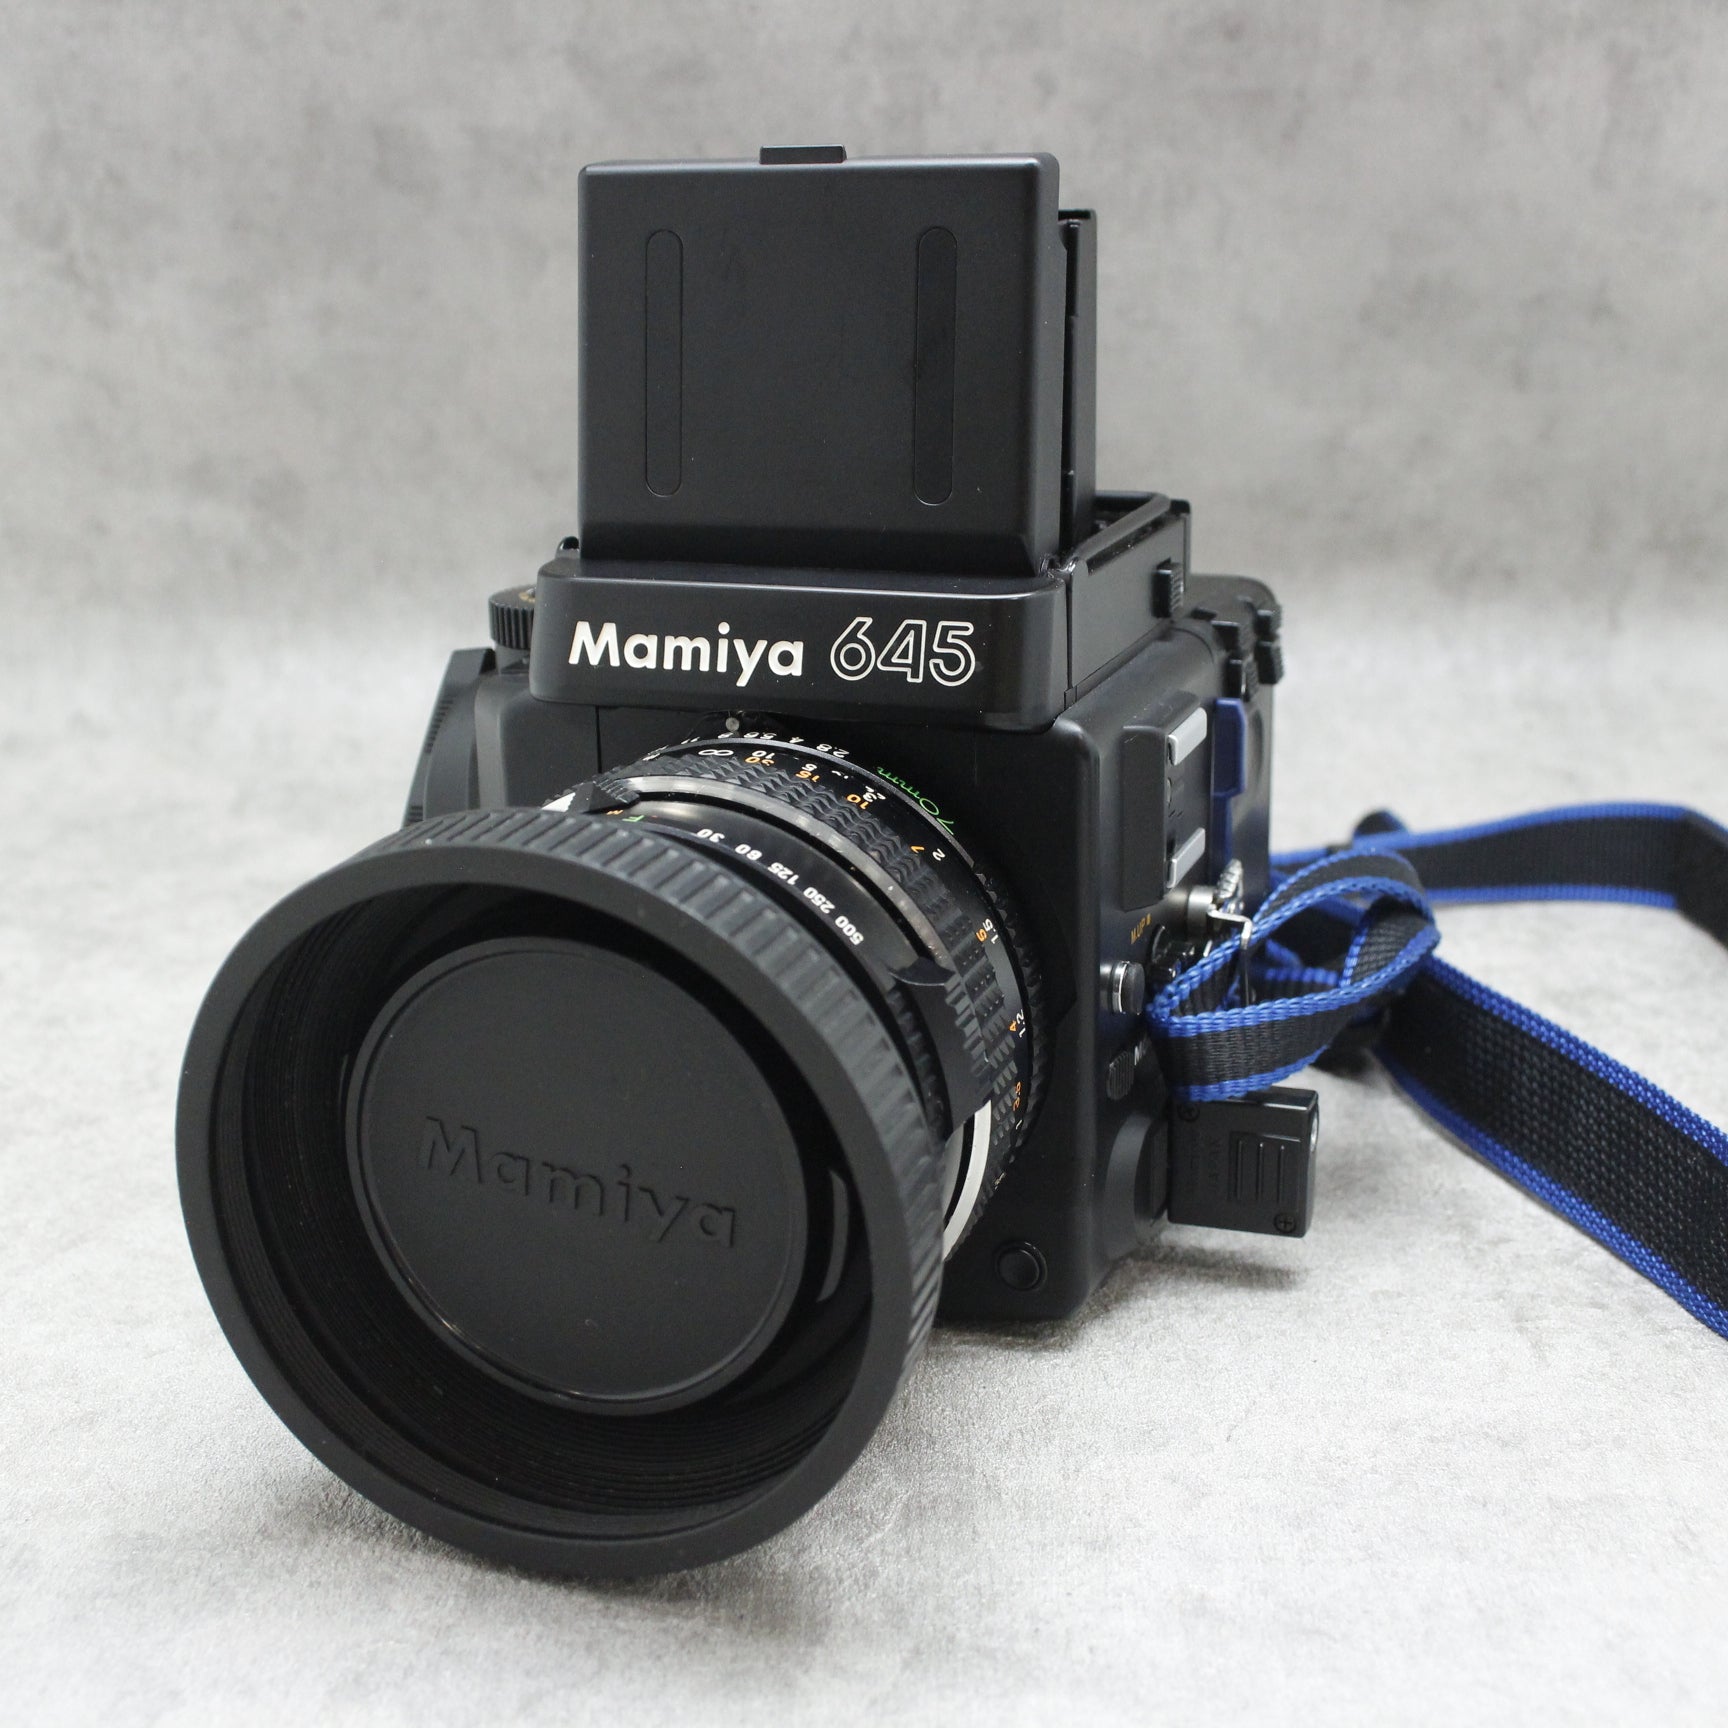 中古品 Mamiya M645 Super SEKOR C 70mm F2.8レンズセット 120フィルム